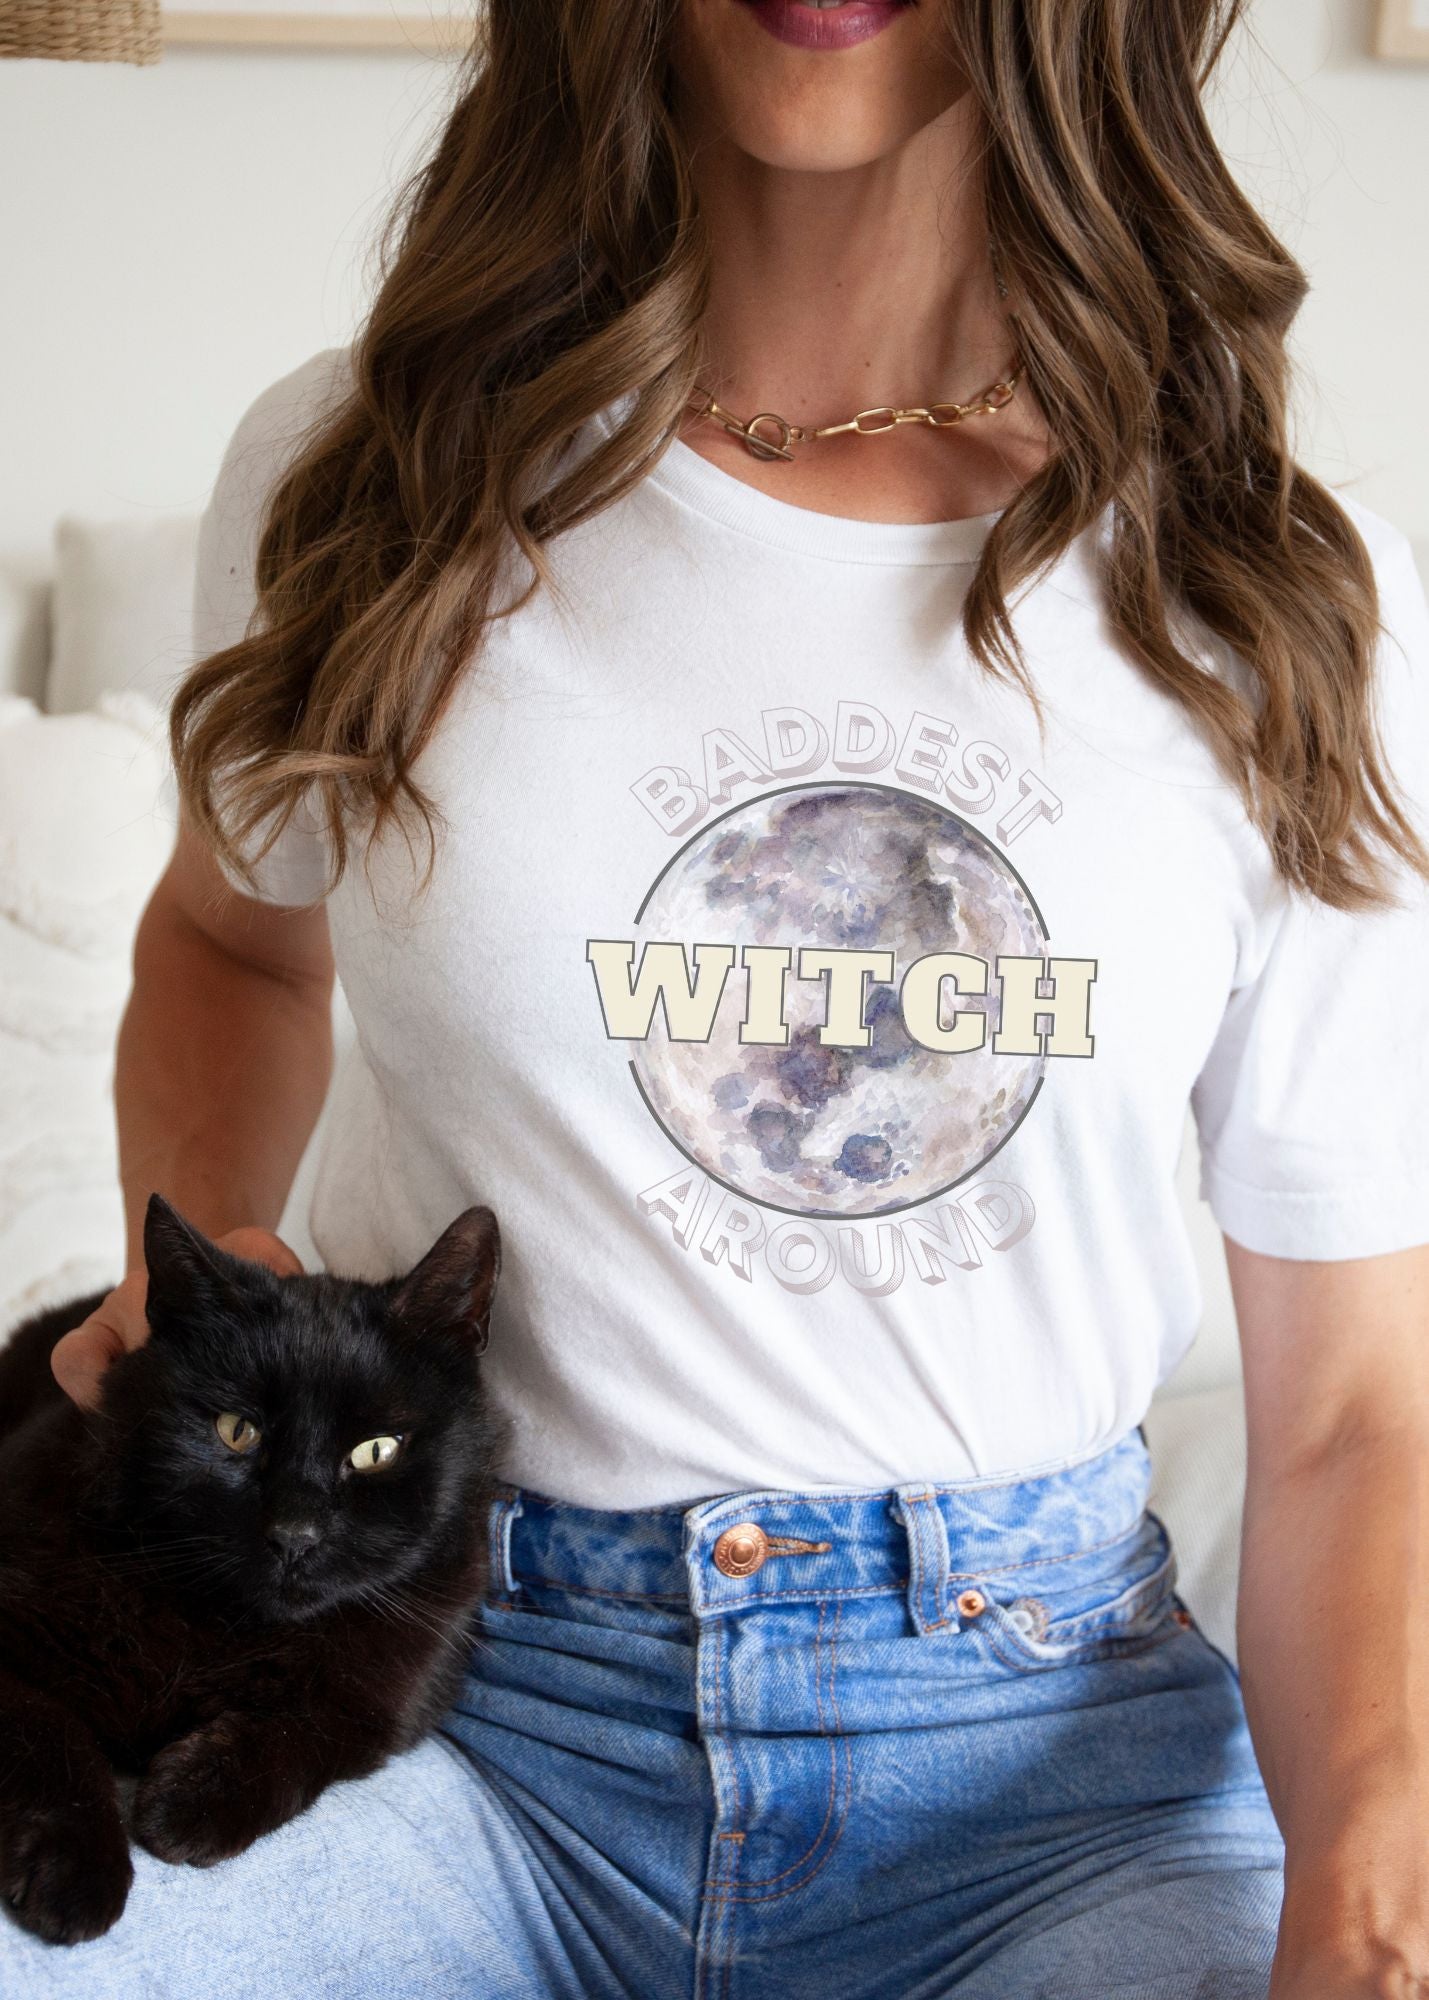 Baddest Witch Around Unisex t-shirt